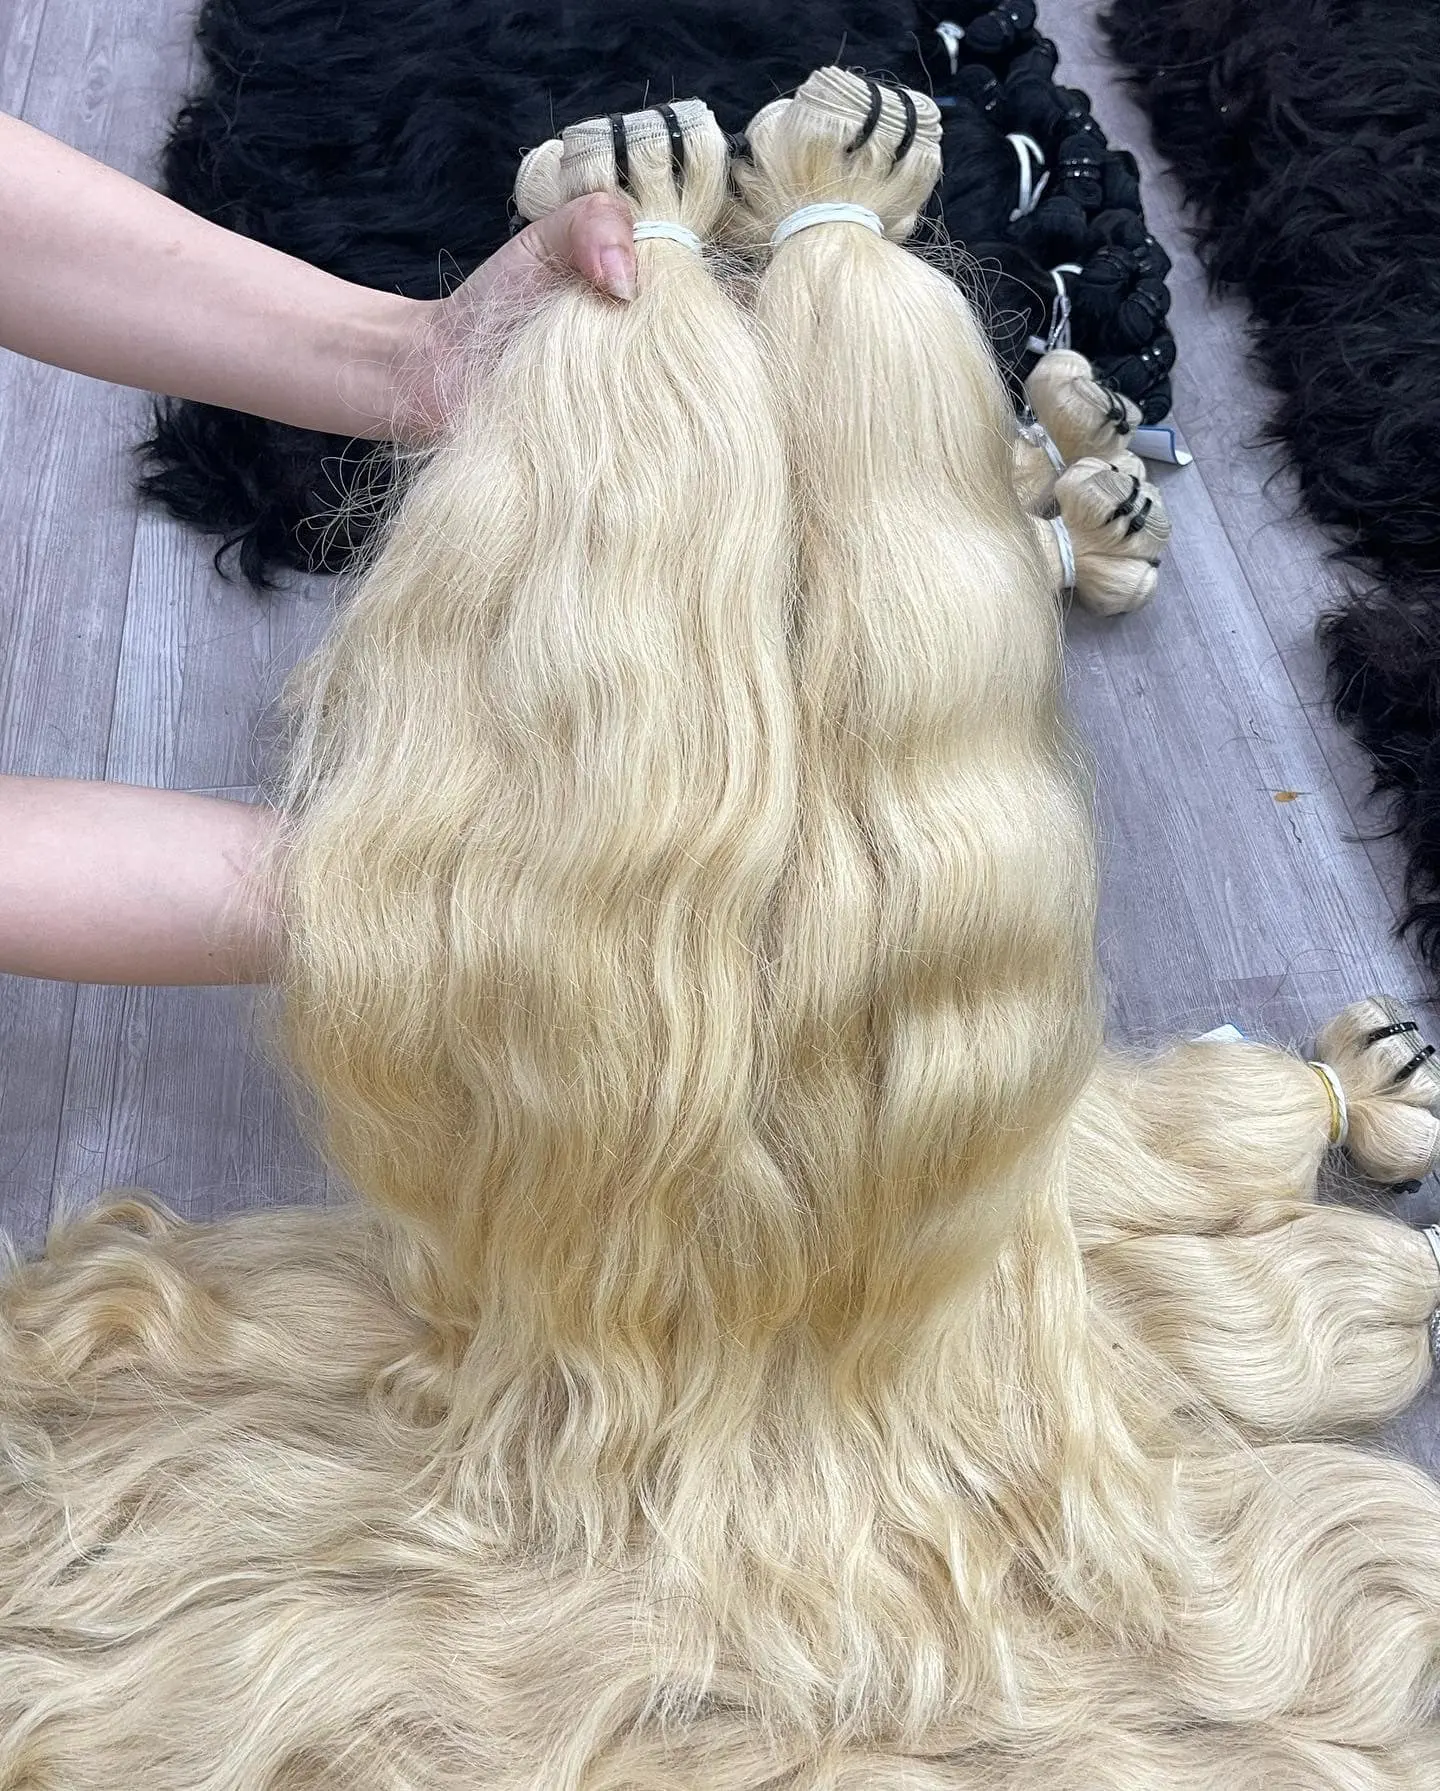 Commercio all'ingrosso 613 capelli vergini allineati capelli vergini vietnamiti biondo vergini estensioni di capelli umani onda naturale fascio di fabbrica del Vietnam